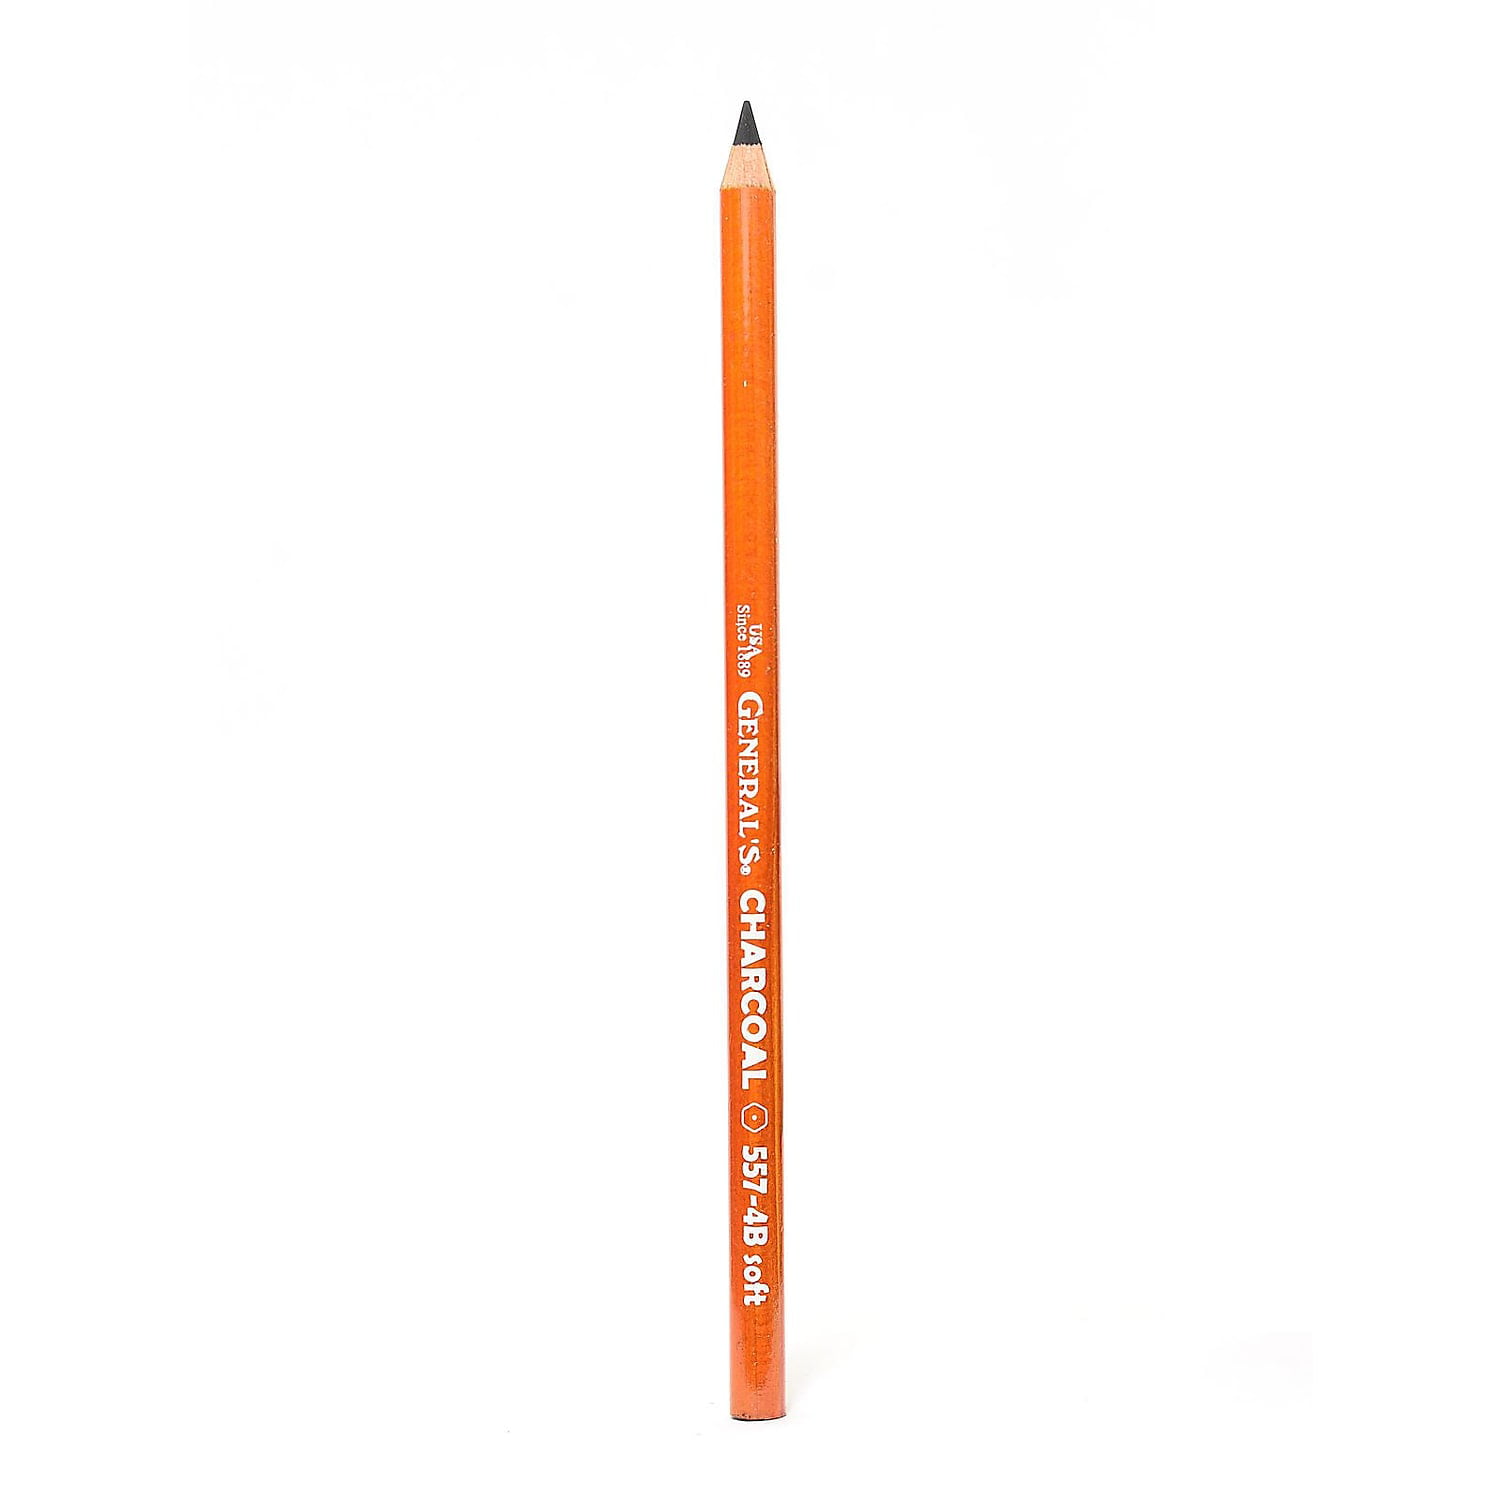 Voertman's: General's Charcoal Pencils